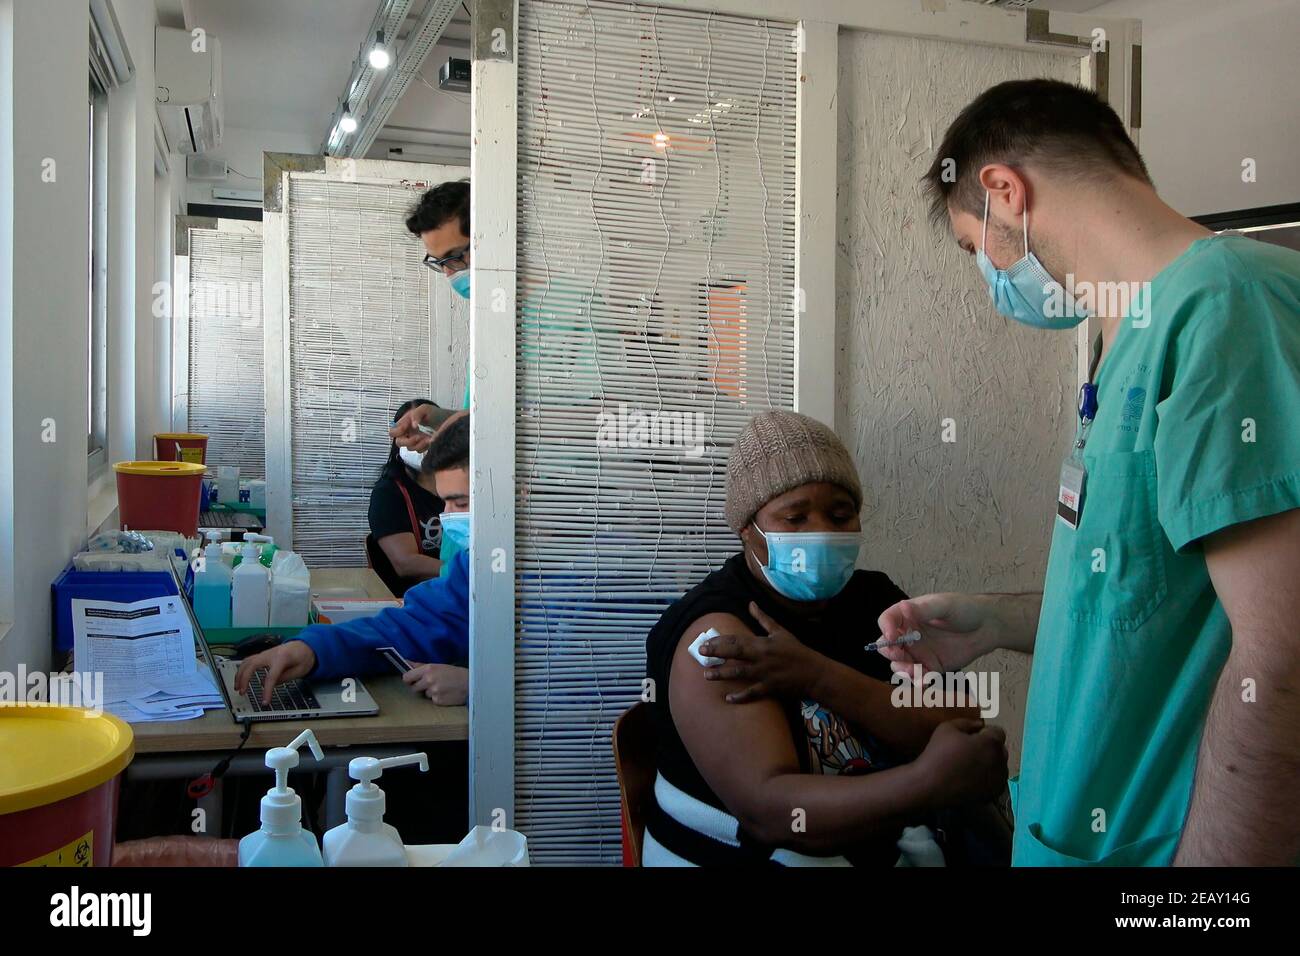 Am 09. Februar 2021, in Tel Aviv, Israel, verabreicht ein Arzt den Impfstoff Pfizer-BioNTech COVID-19 an einen Ausländer im Sourasky Medical Center für ausländische Staatsangehörige. Anderthalb Monate nachdem Israel seine weltweit führende Impfkampagne gegen das Coronavirus gestartet hatte, begannen die Stadtverwaltung Tel Aviv-Yafo und das Sourasky Medical Center (Ichilov Hospital) damit, den ausländischen Staatsangehörigen der Stadt, von denen viele nicht dokumentierte Asylbewerber sind, kostenlos Pfizer-BioNTech-Coronavirus-Impfstoffe zu verabreichen. Stockfoto